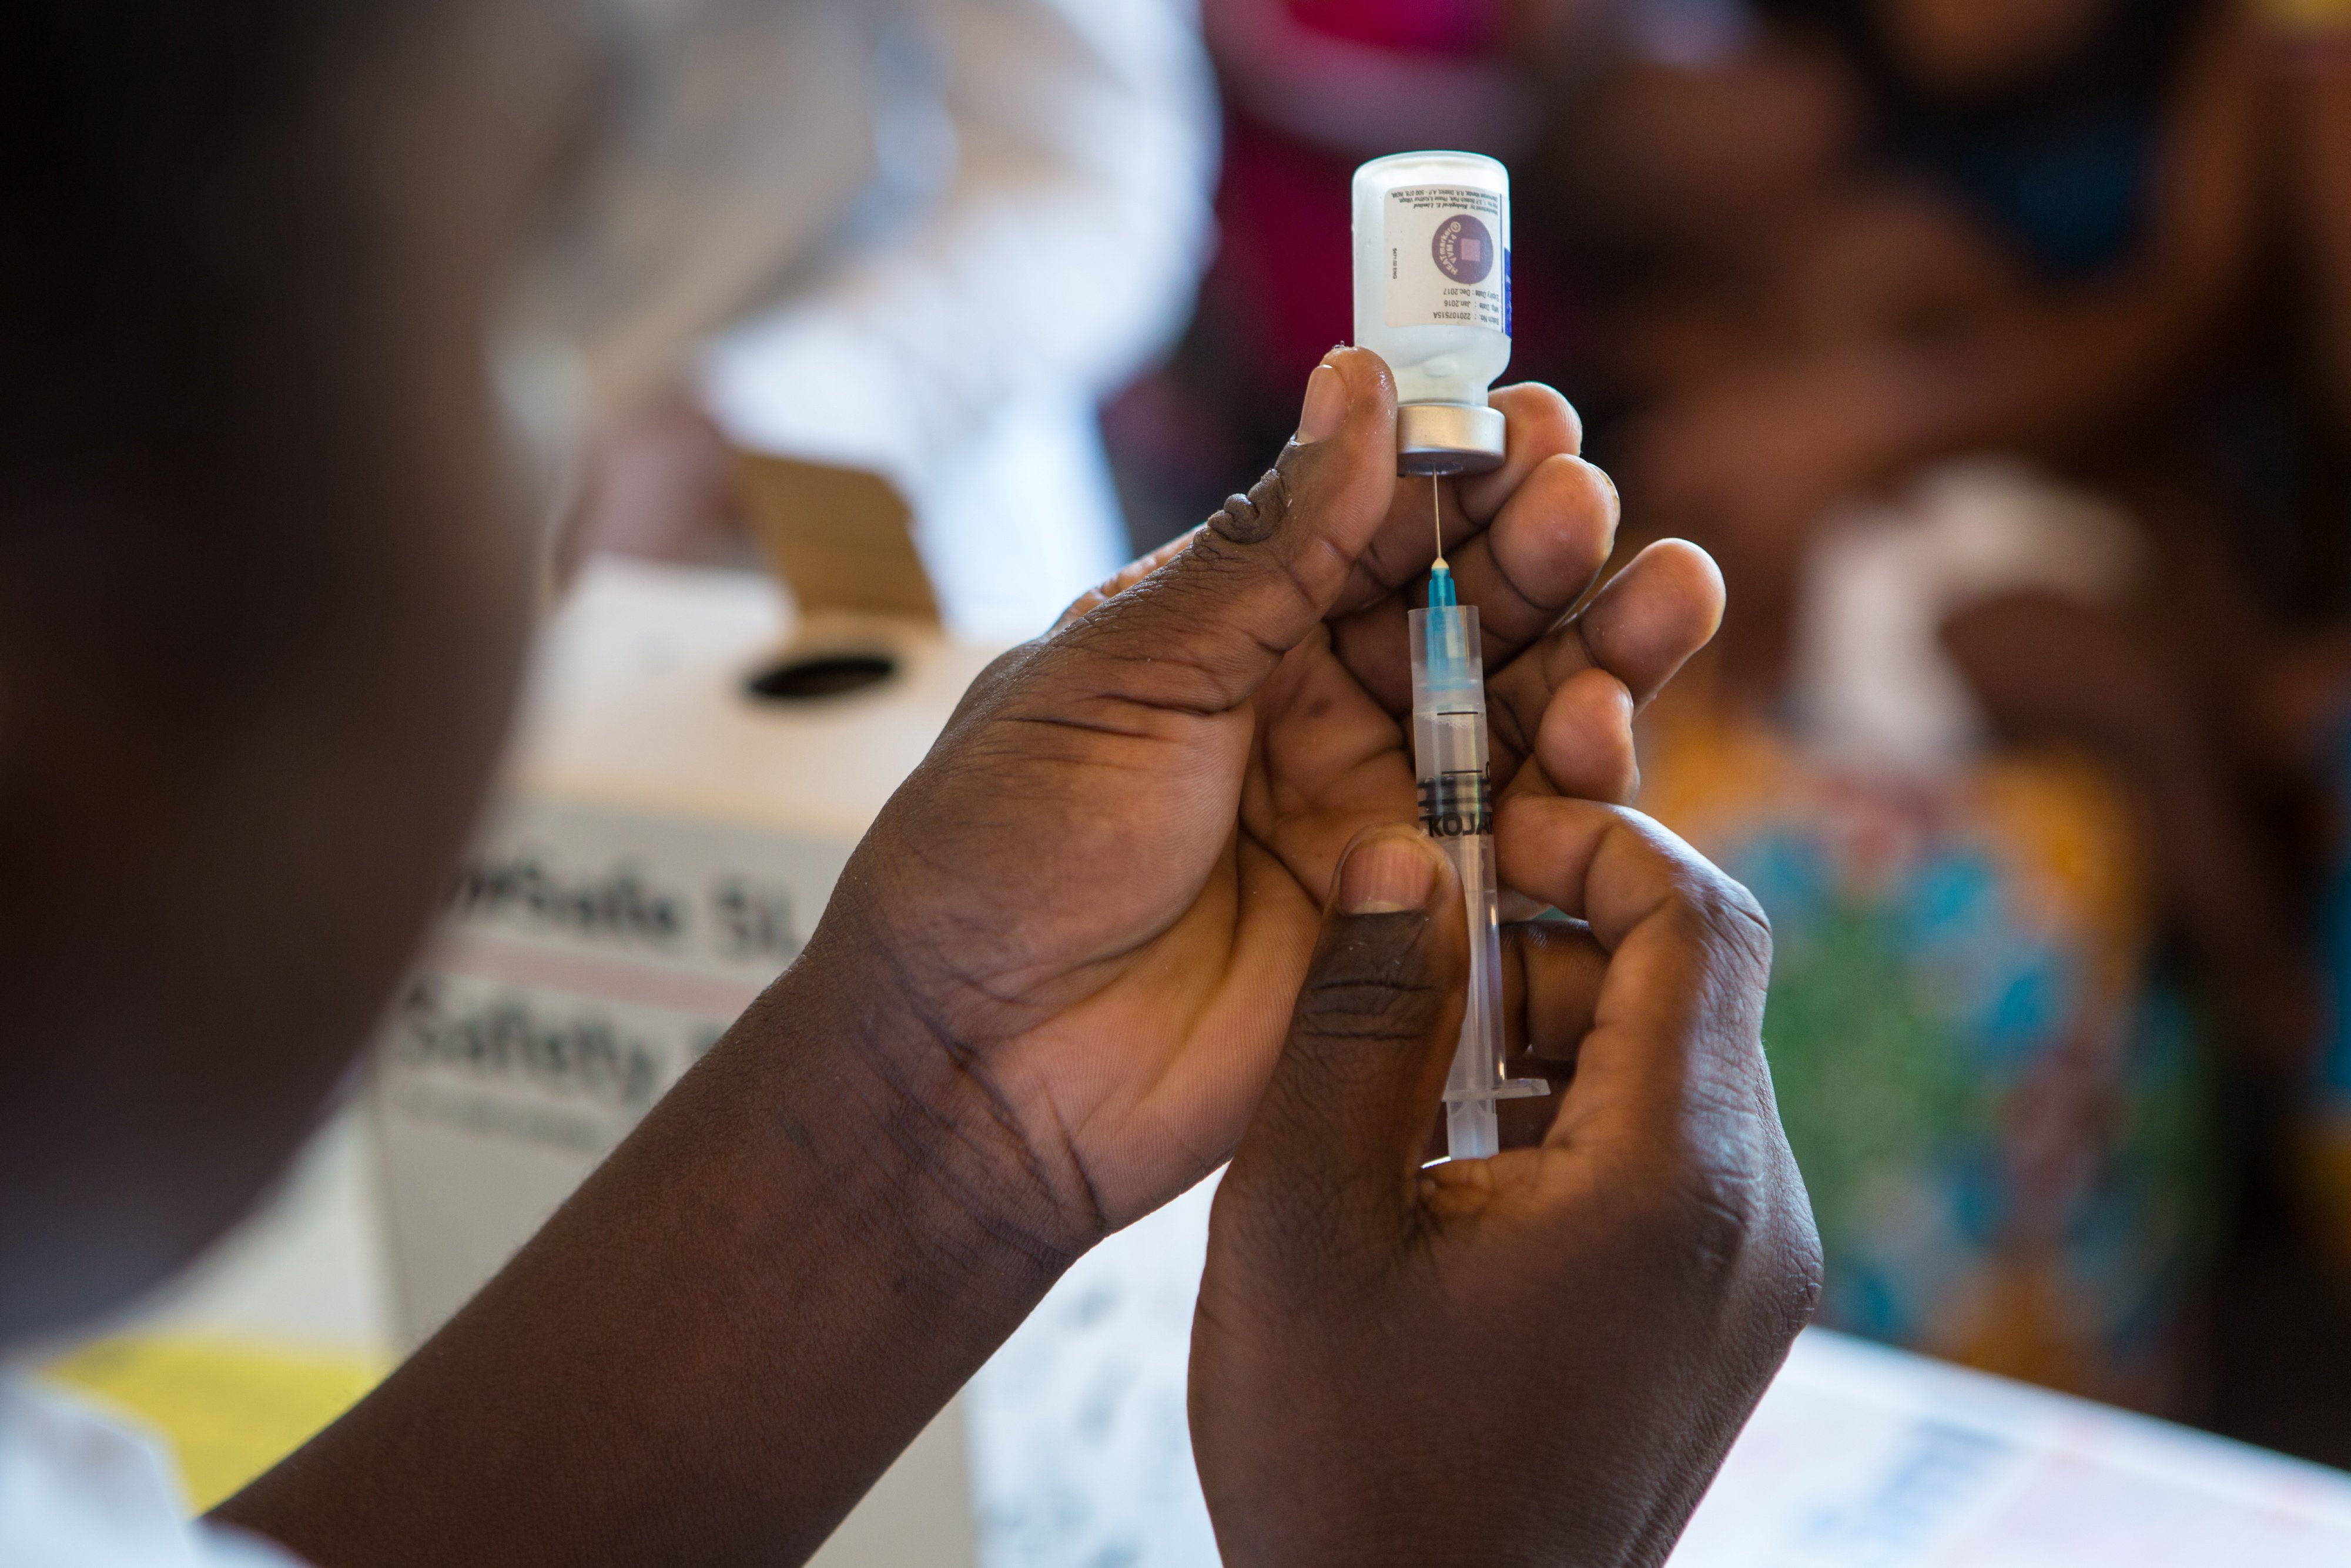 La Caixa vacuna set milions de nens a l'Àfrica i Llatinoamèrica des de 2008